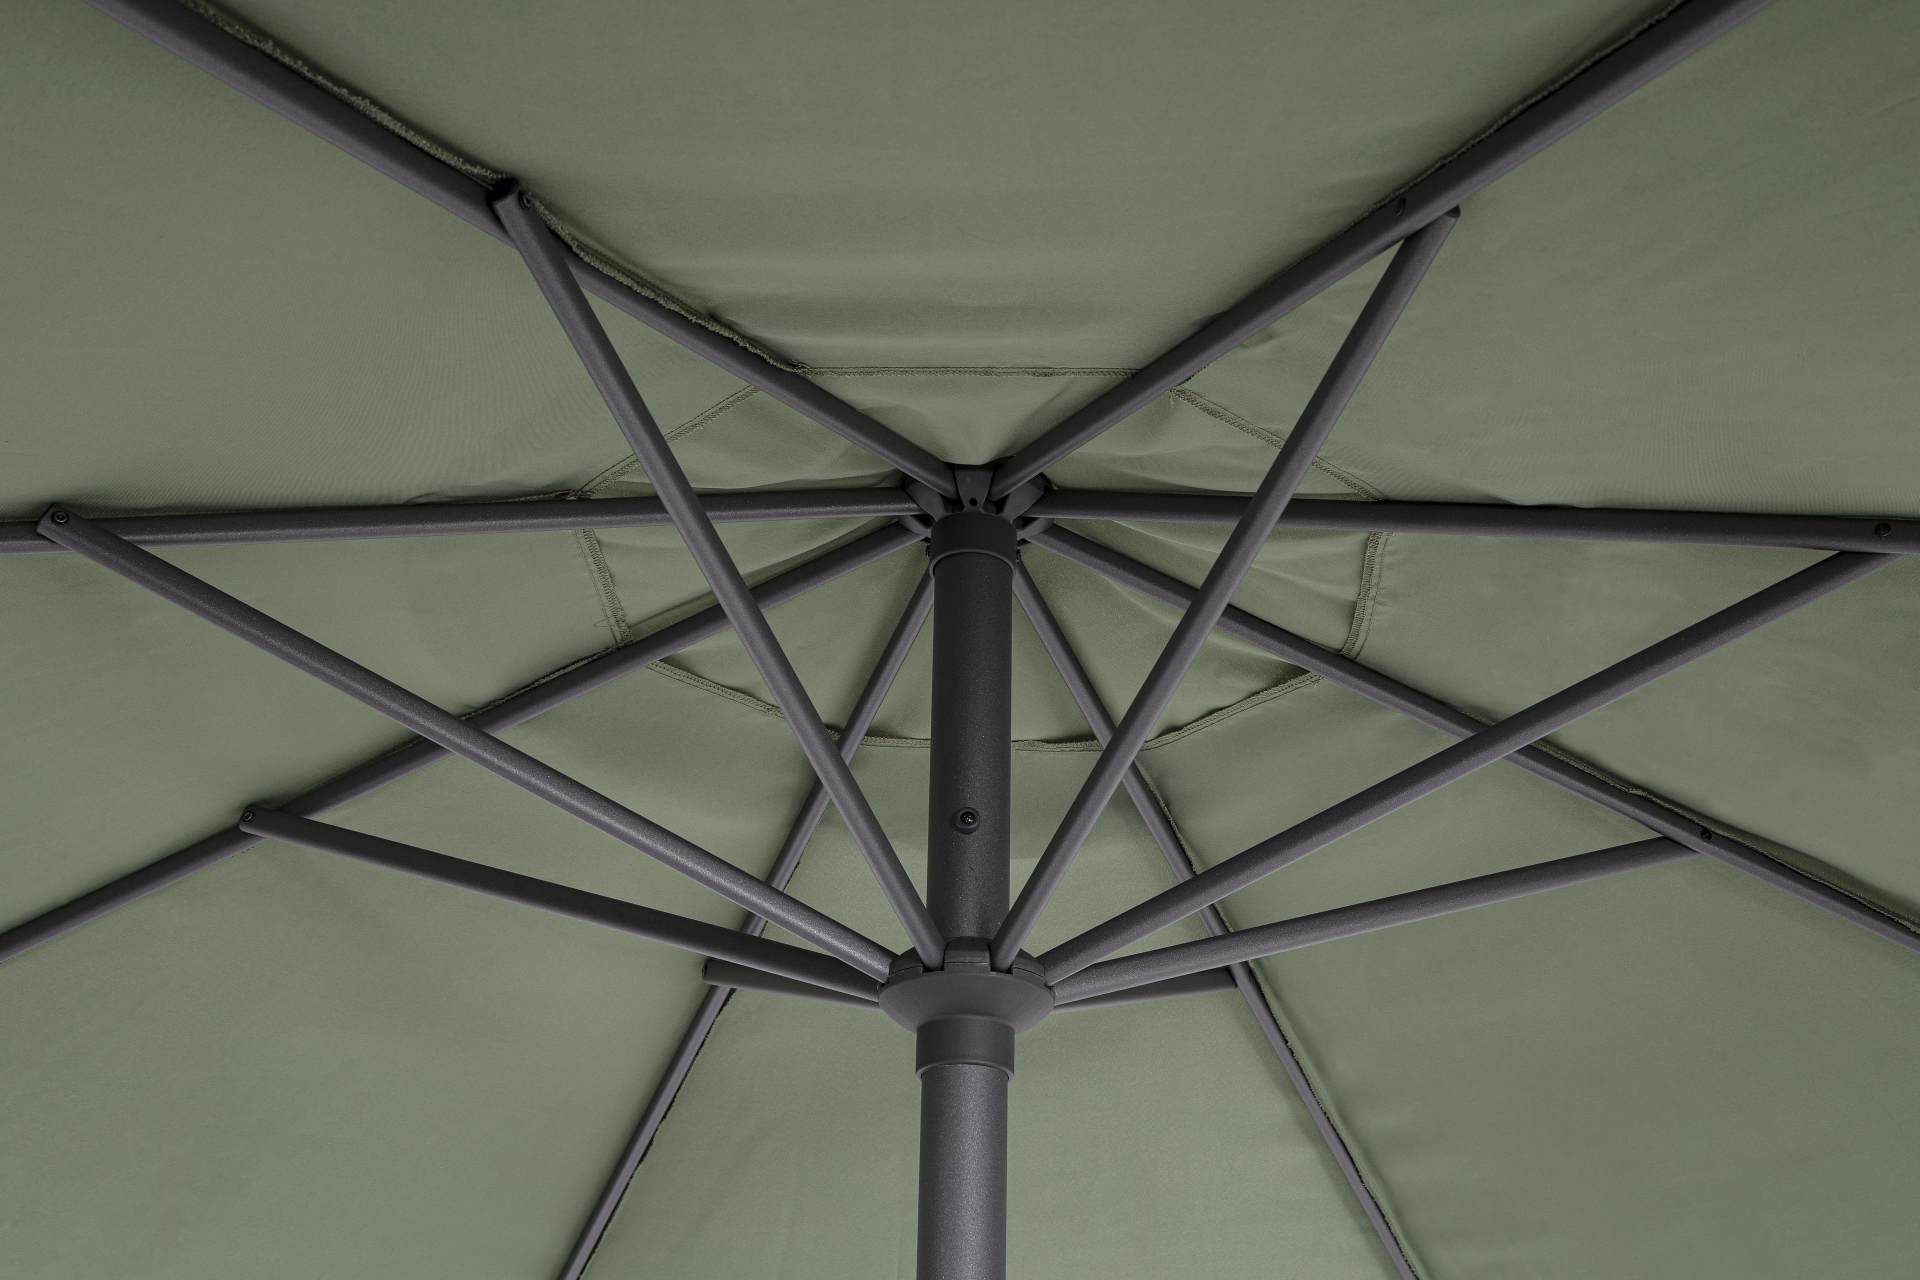 Der Sonnenschirm Rio überzeugt mit seinem klassischen Design. Gefertigt wurde er aus einer Polyester Plane, welche einen olive Farbton besitzt. Das Gestell ist aus Aluminium und hat eine Anthrazit Farbe. Der Sonnenschirm verfügt über einen Durchmesser von